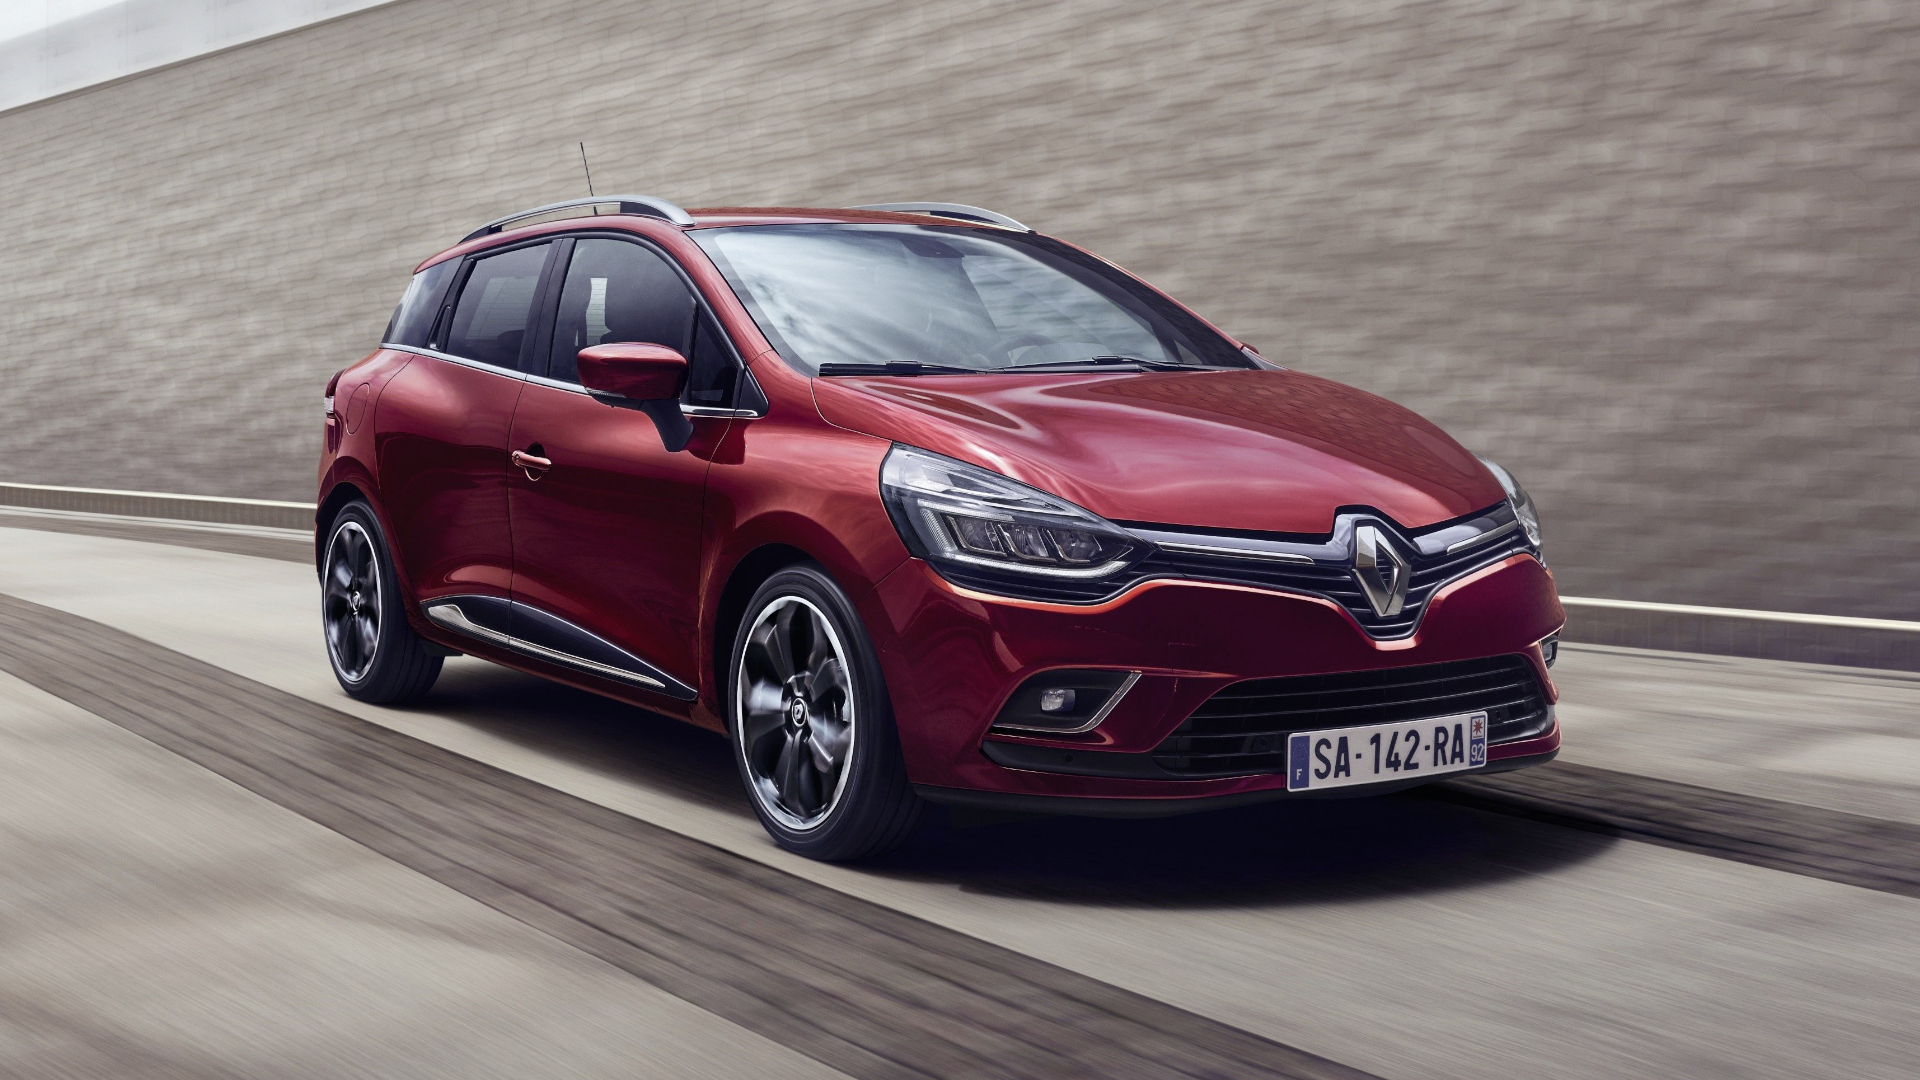 Renault Clio 5 (2019) Test: Preise, Daten